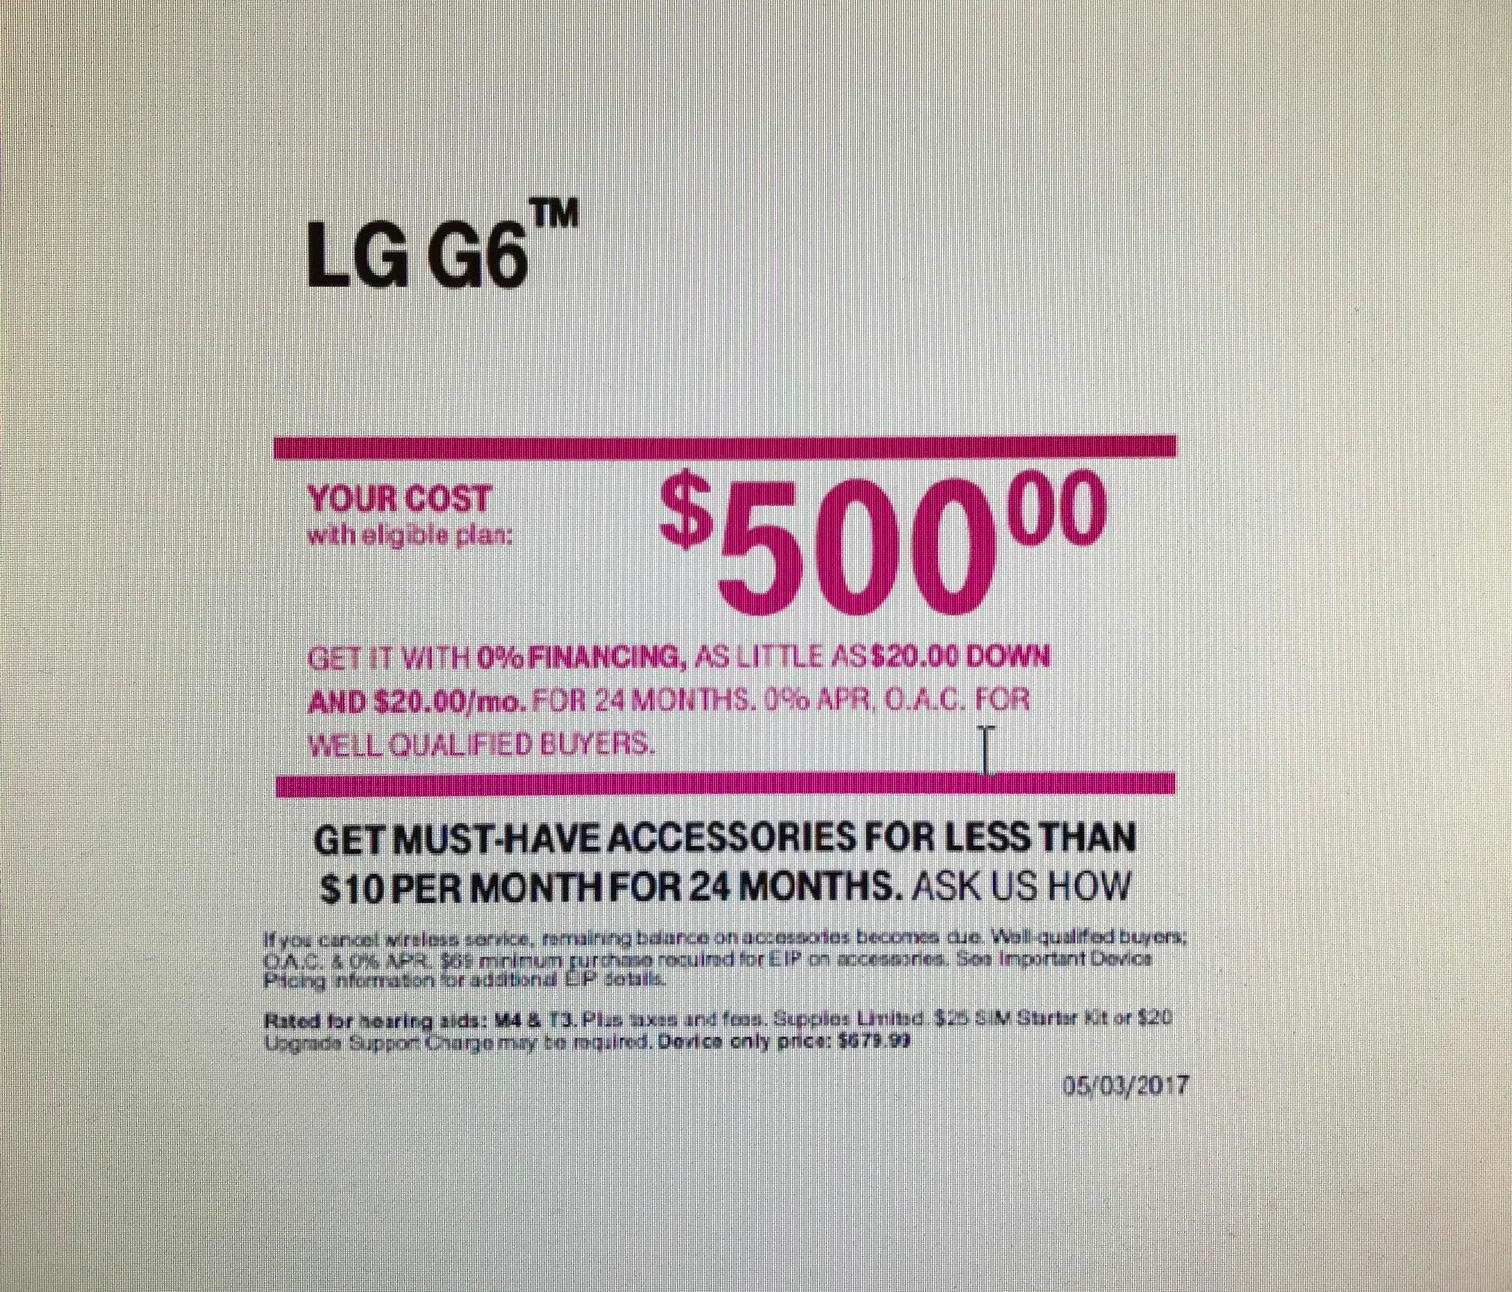 El precio del LG G6 de T-Mobile baja a $ 500, todavía disponible con Google Home gratis hasta el 7 de mayo